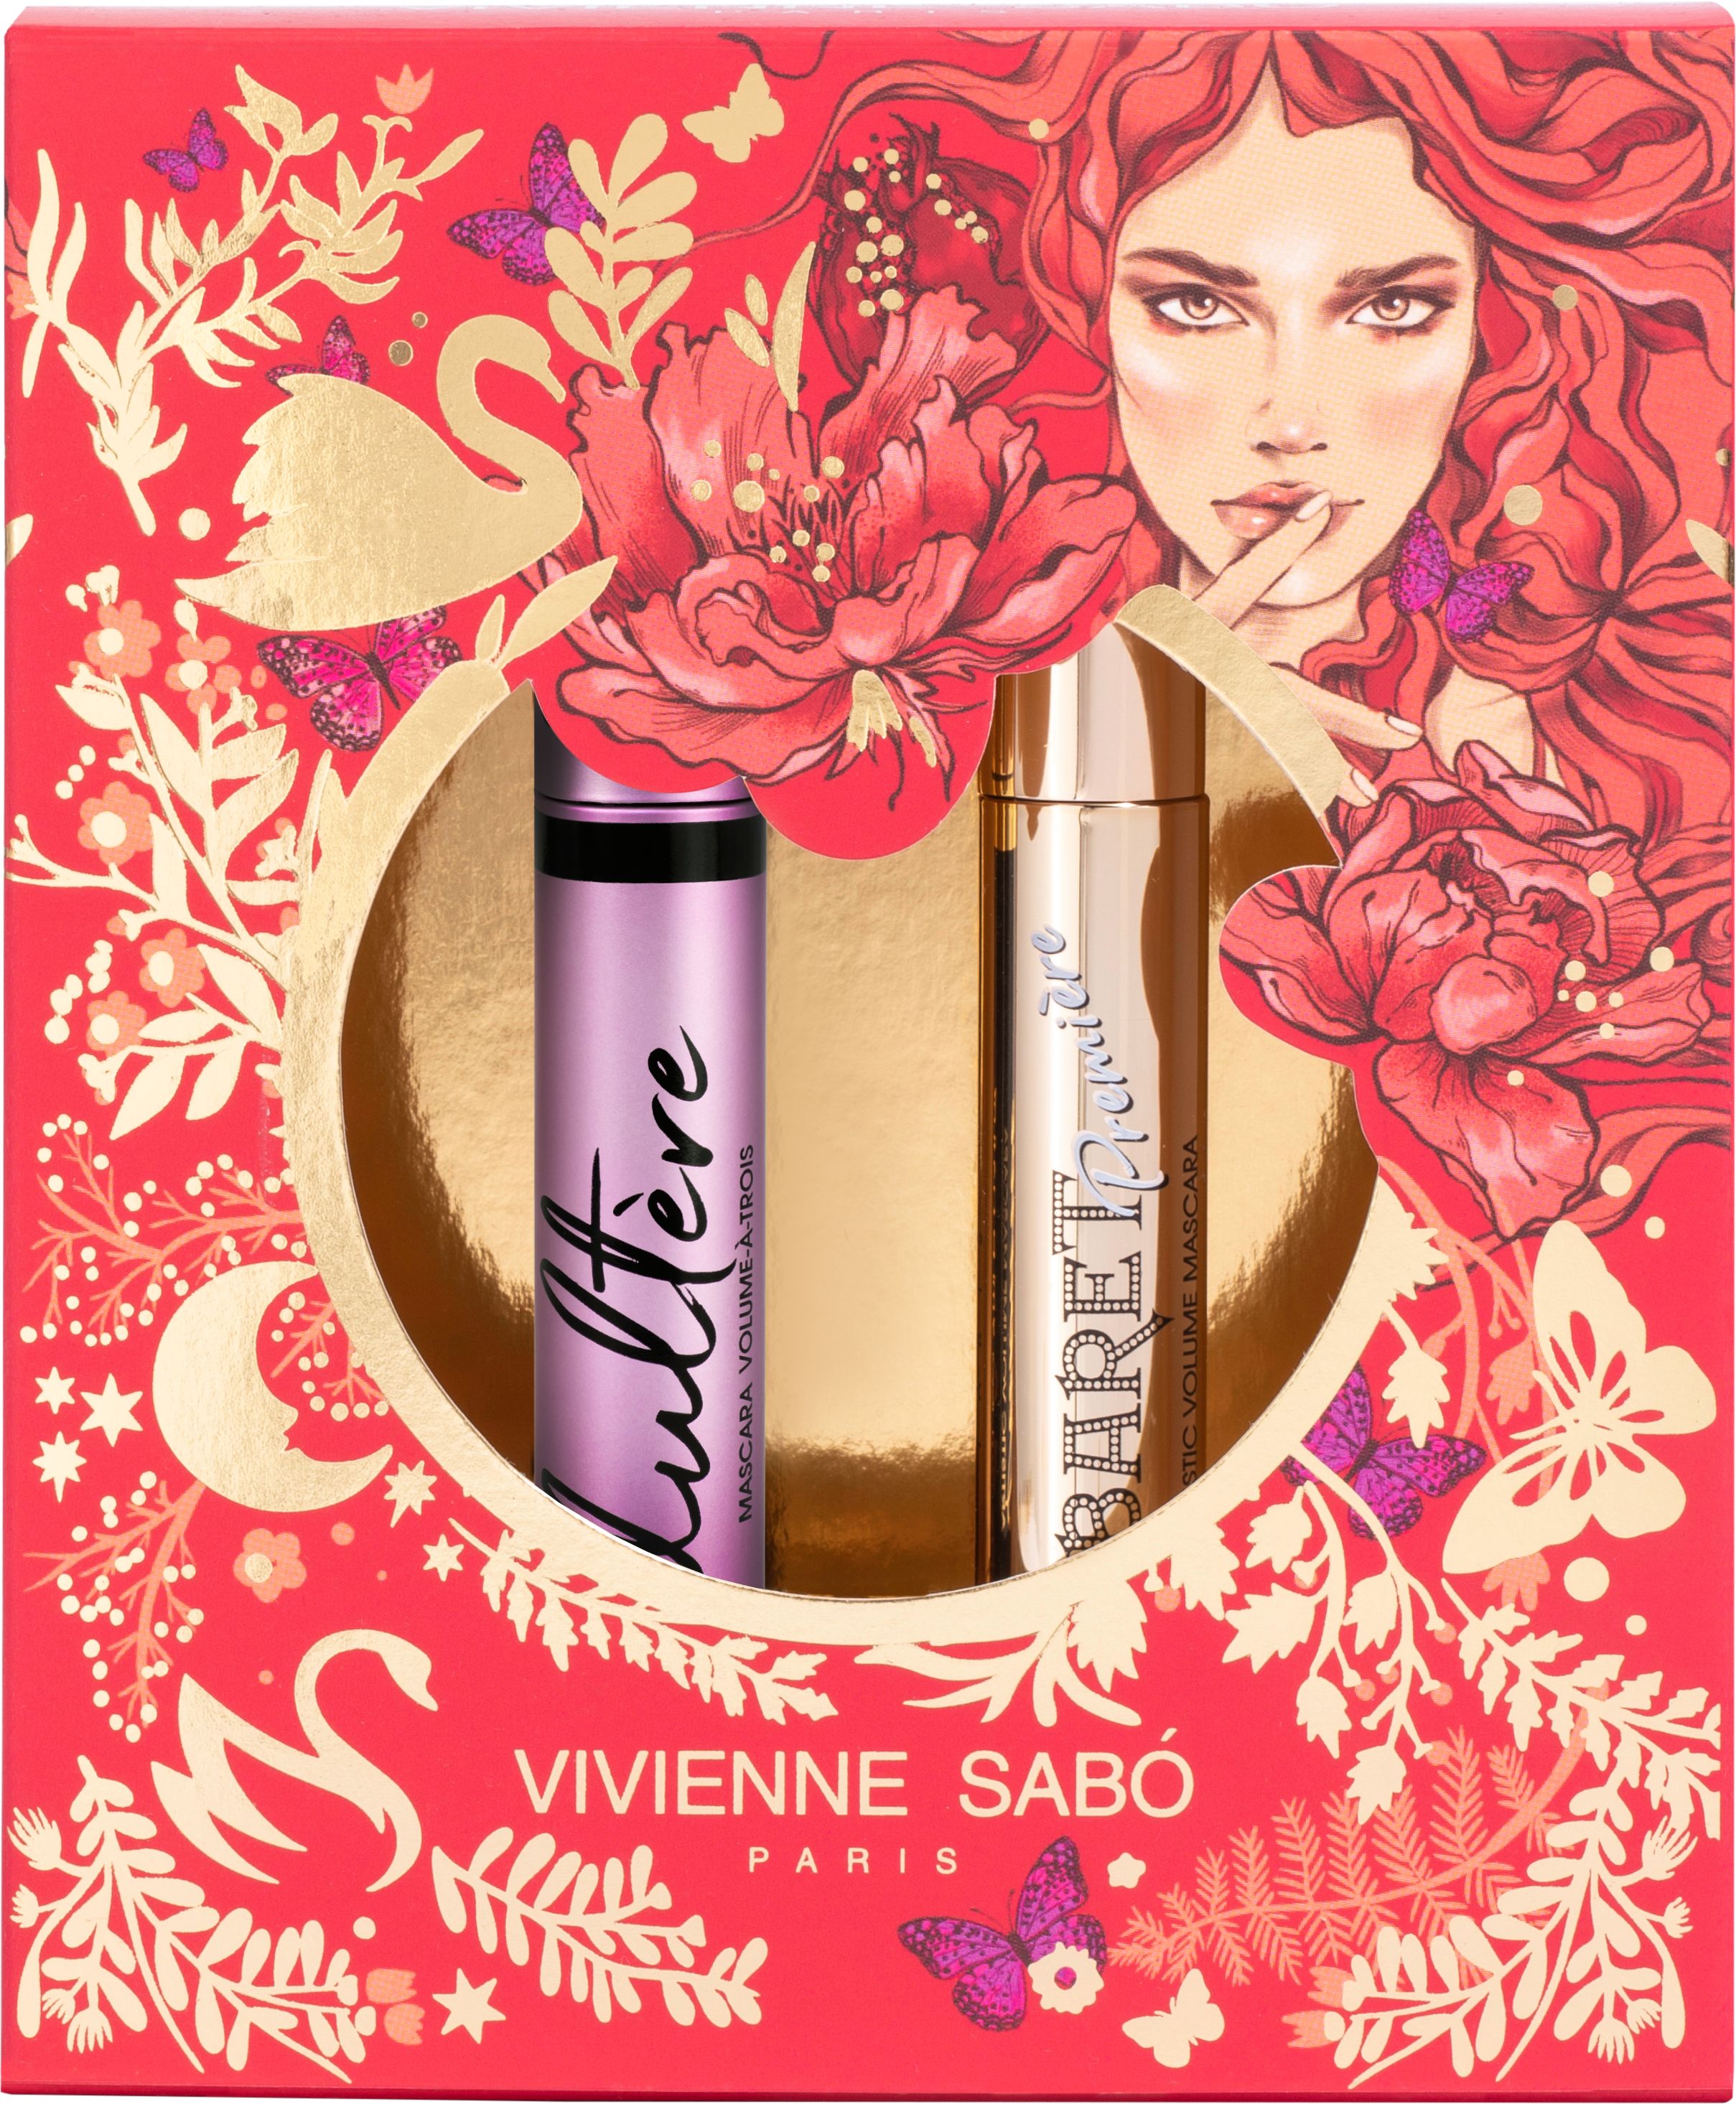 Vivienne Sabo - Gift Set VII (Mascara Cabaret Premiere 01+Mascara Adultere 01)